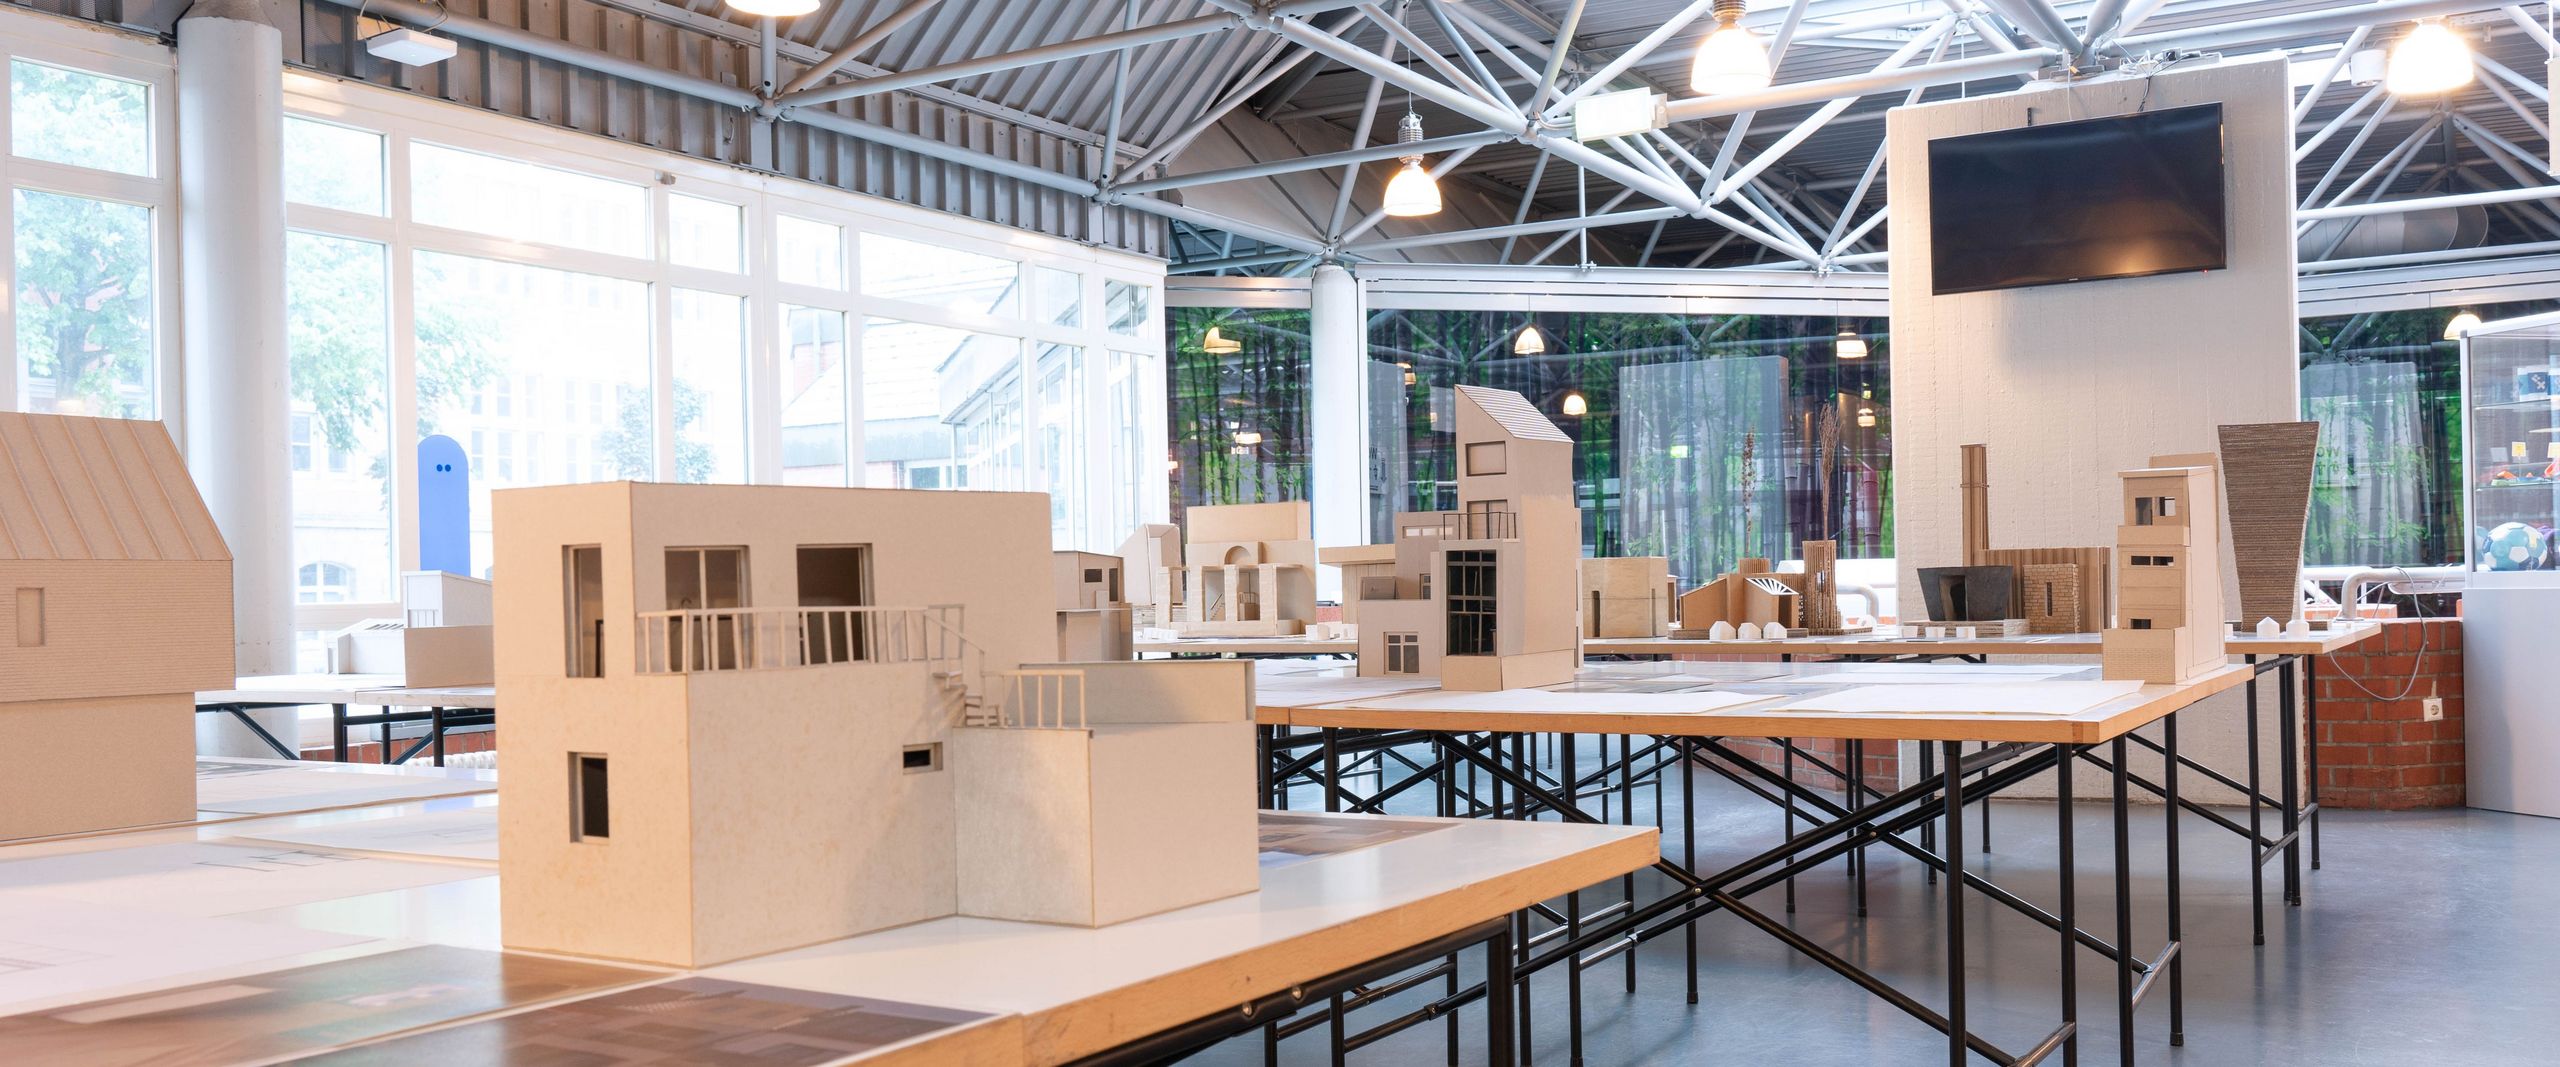 Blick auf eine Ausstellung mit Architekturmodellen auf Tischen